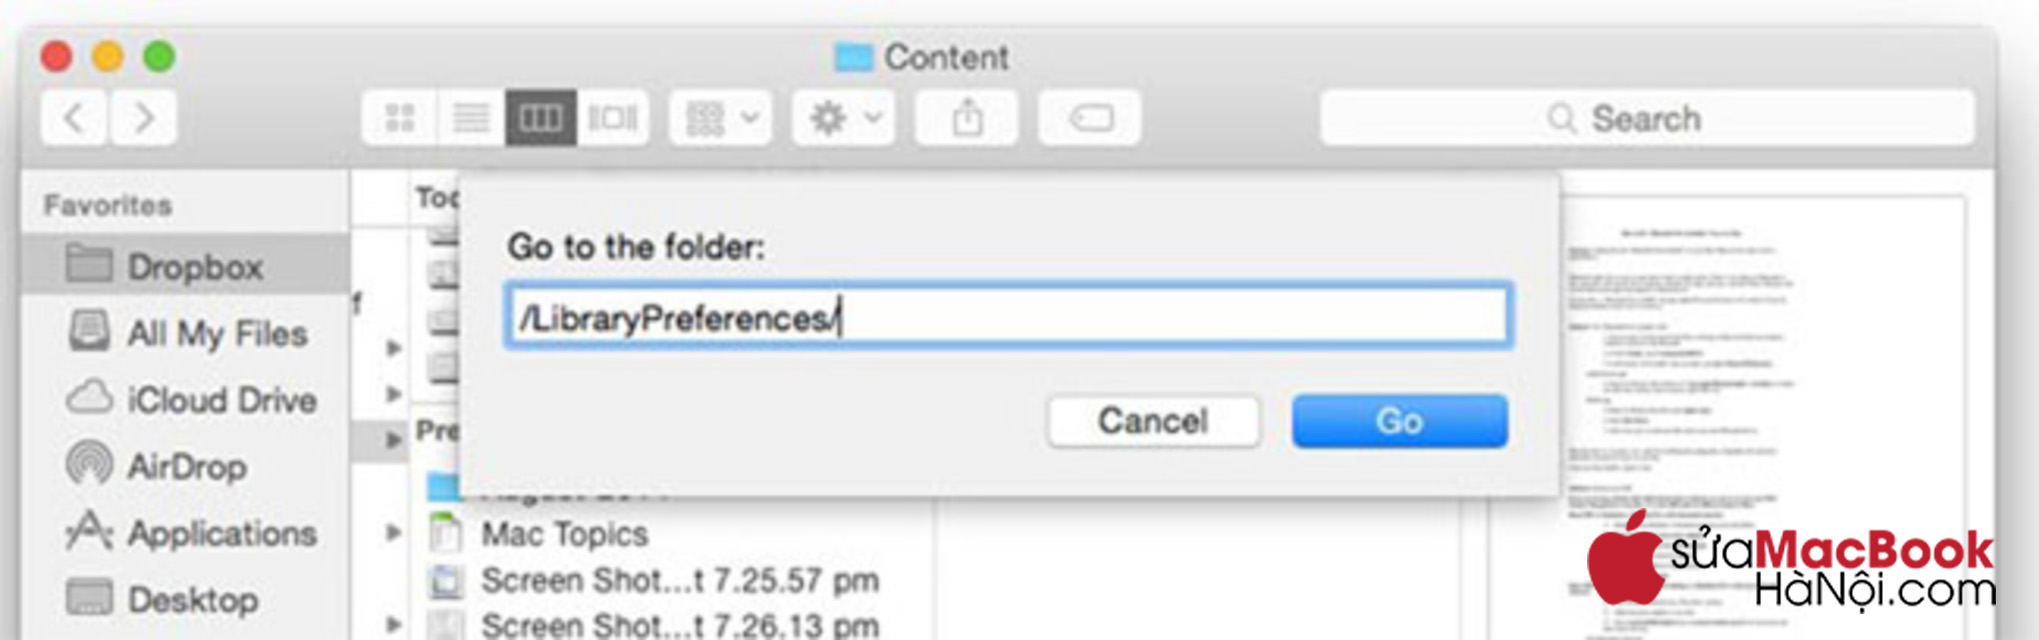 Nhập /Library/Preferences/ vào khoảng trống trong mục "Go to Folder".